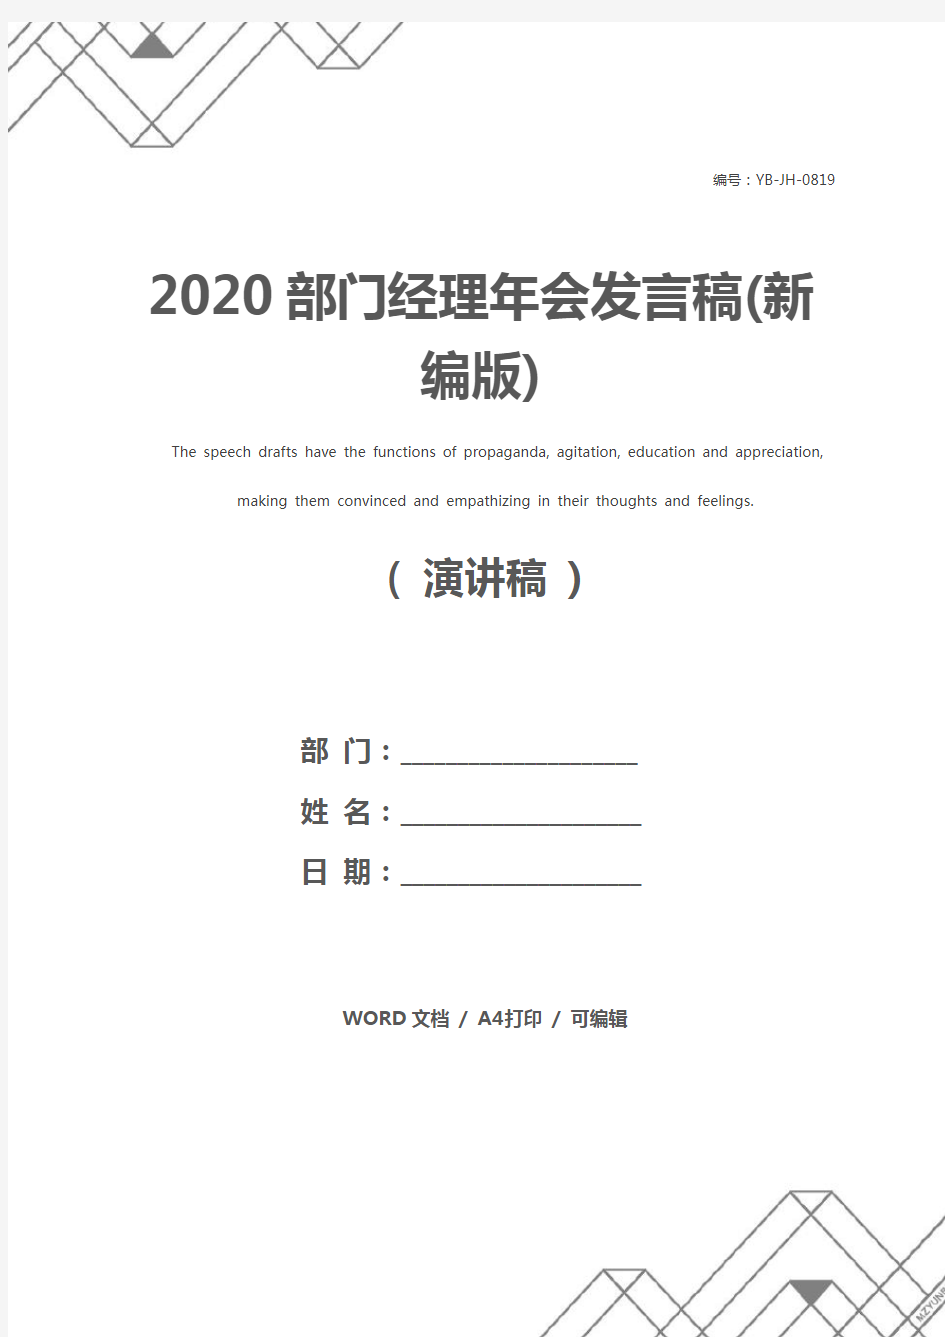 2020部门经理年会发言稿(新编版)